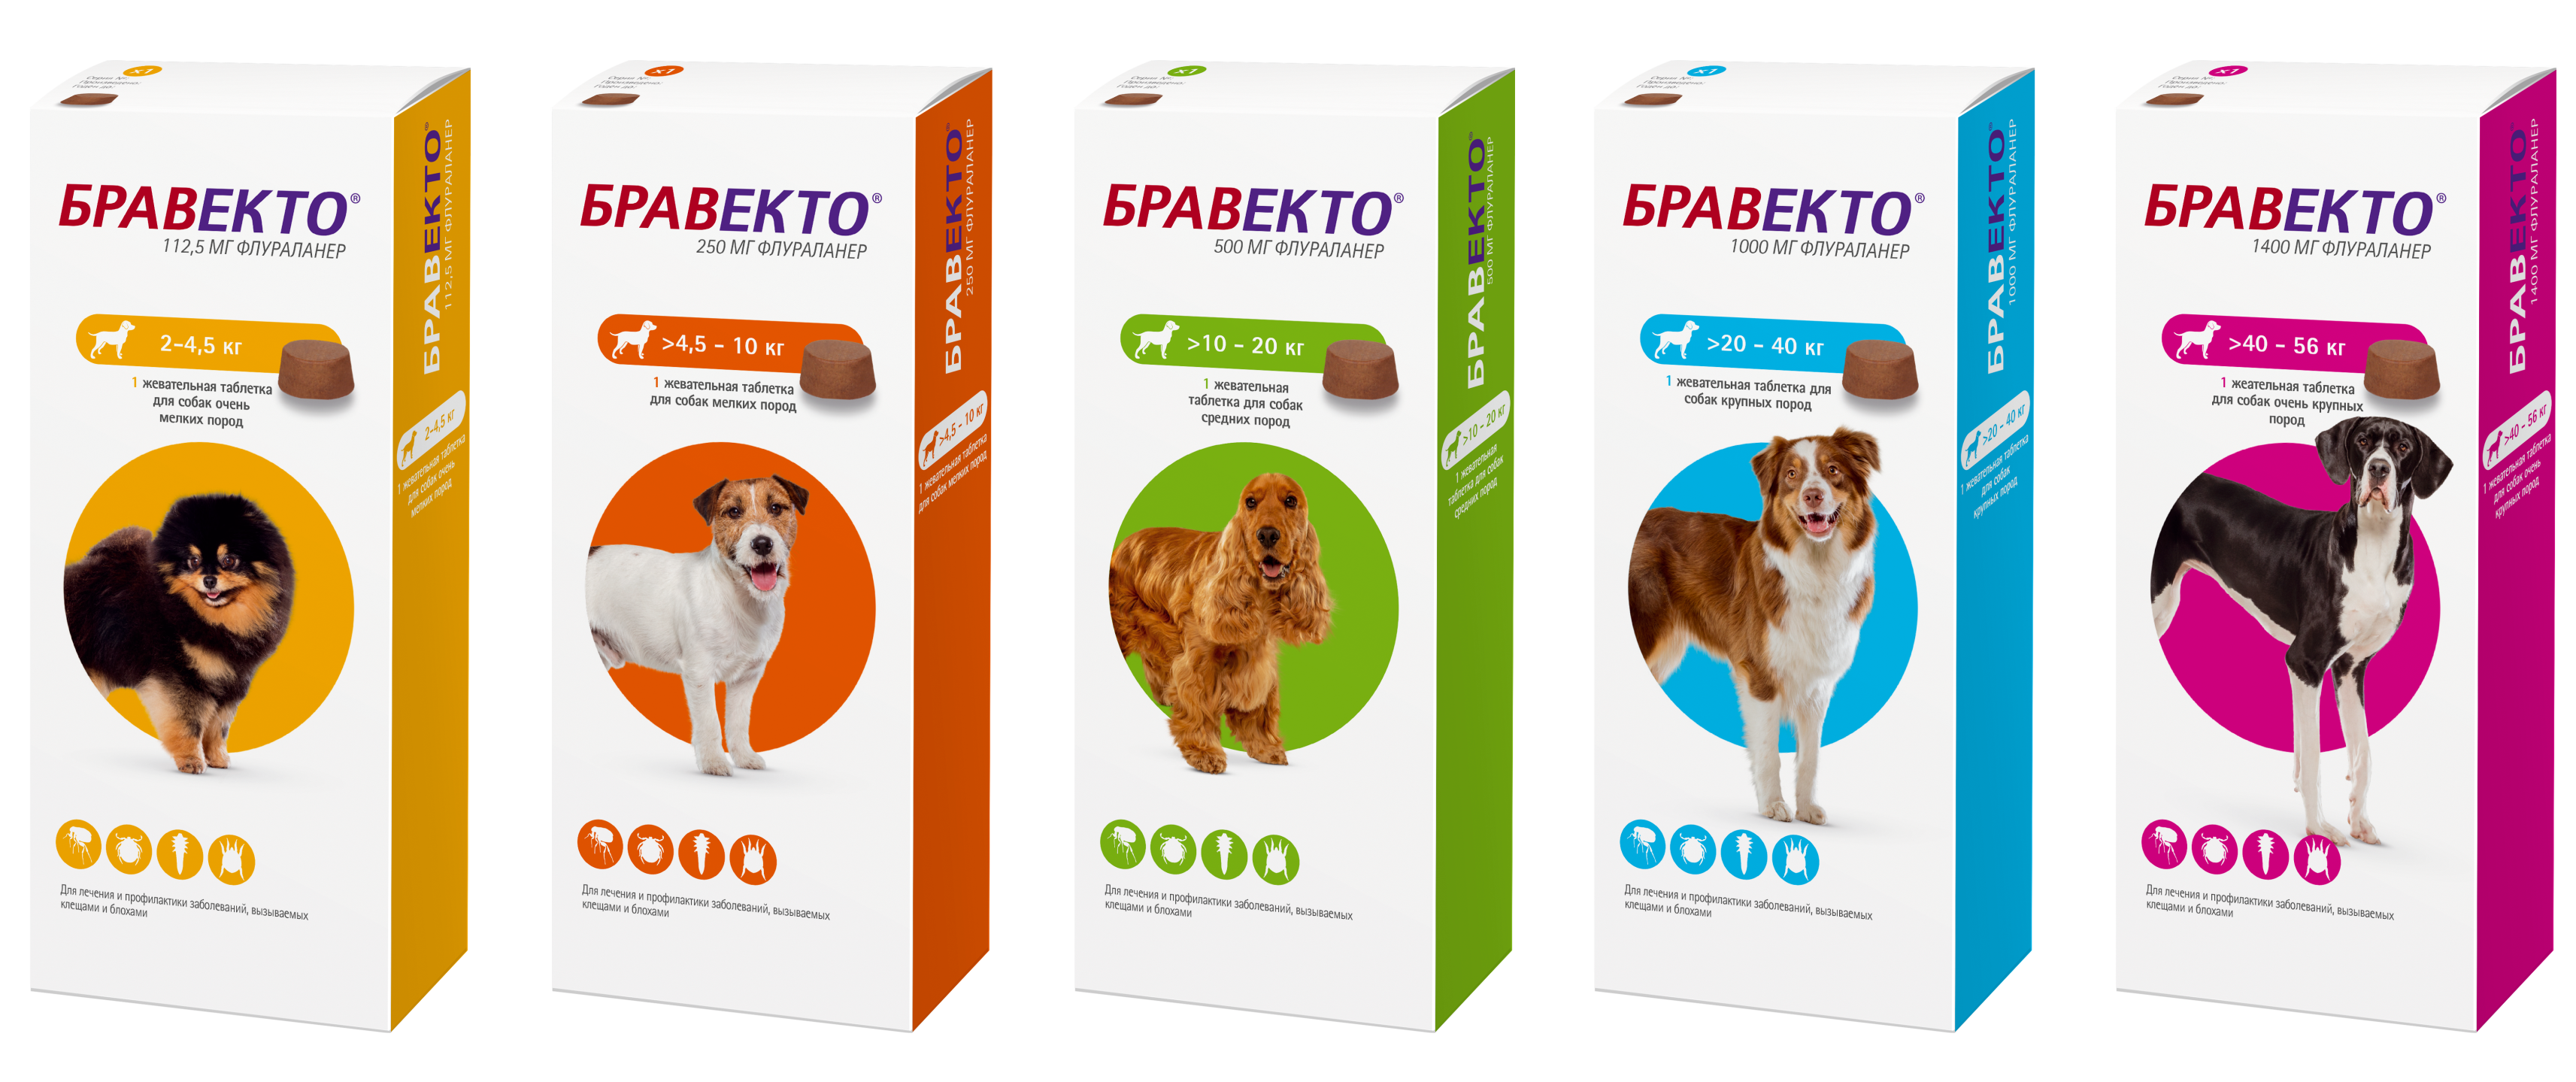 Бравекто для собак купить 4 5 кг. Intervet Бравекто жевательная таблетка для собак 4,5-10кг 250мг. Бравекто для собак 20-40 кг таблетки. Таблетки от клещей для собак Бравекто 20-40 кг. Бравекто таблетка для собак 4 5 10 кг.